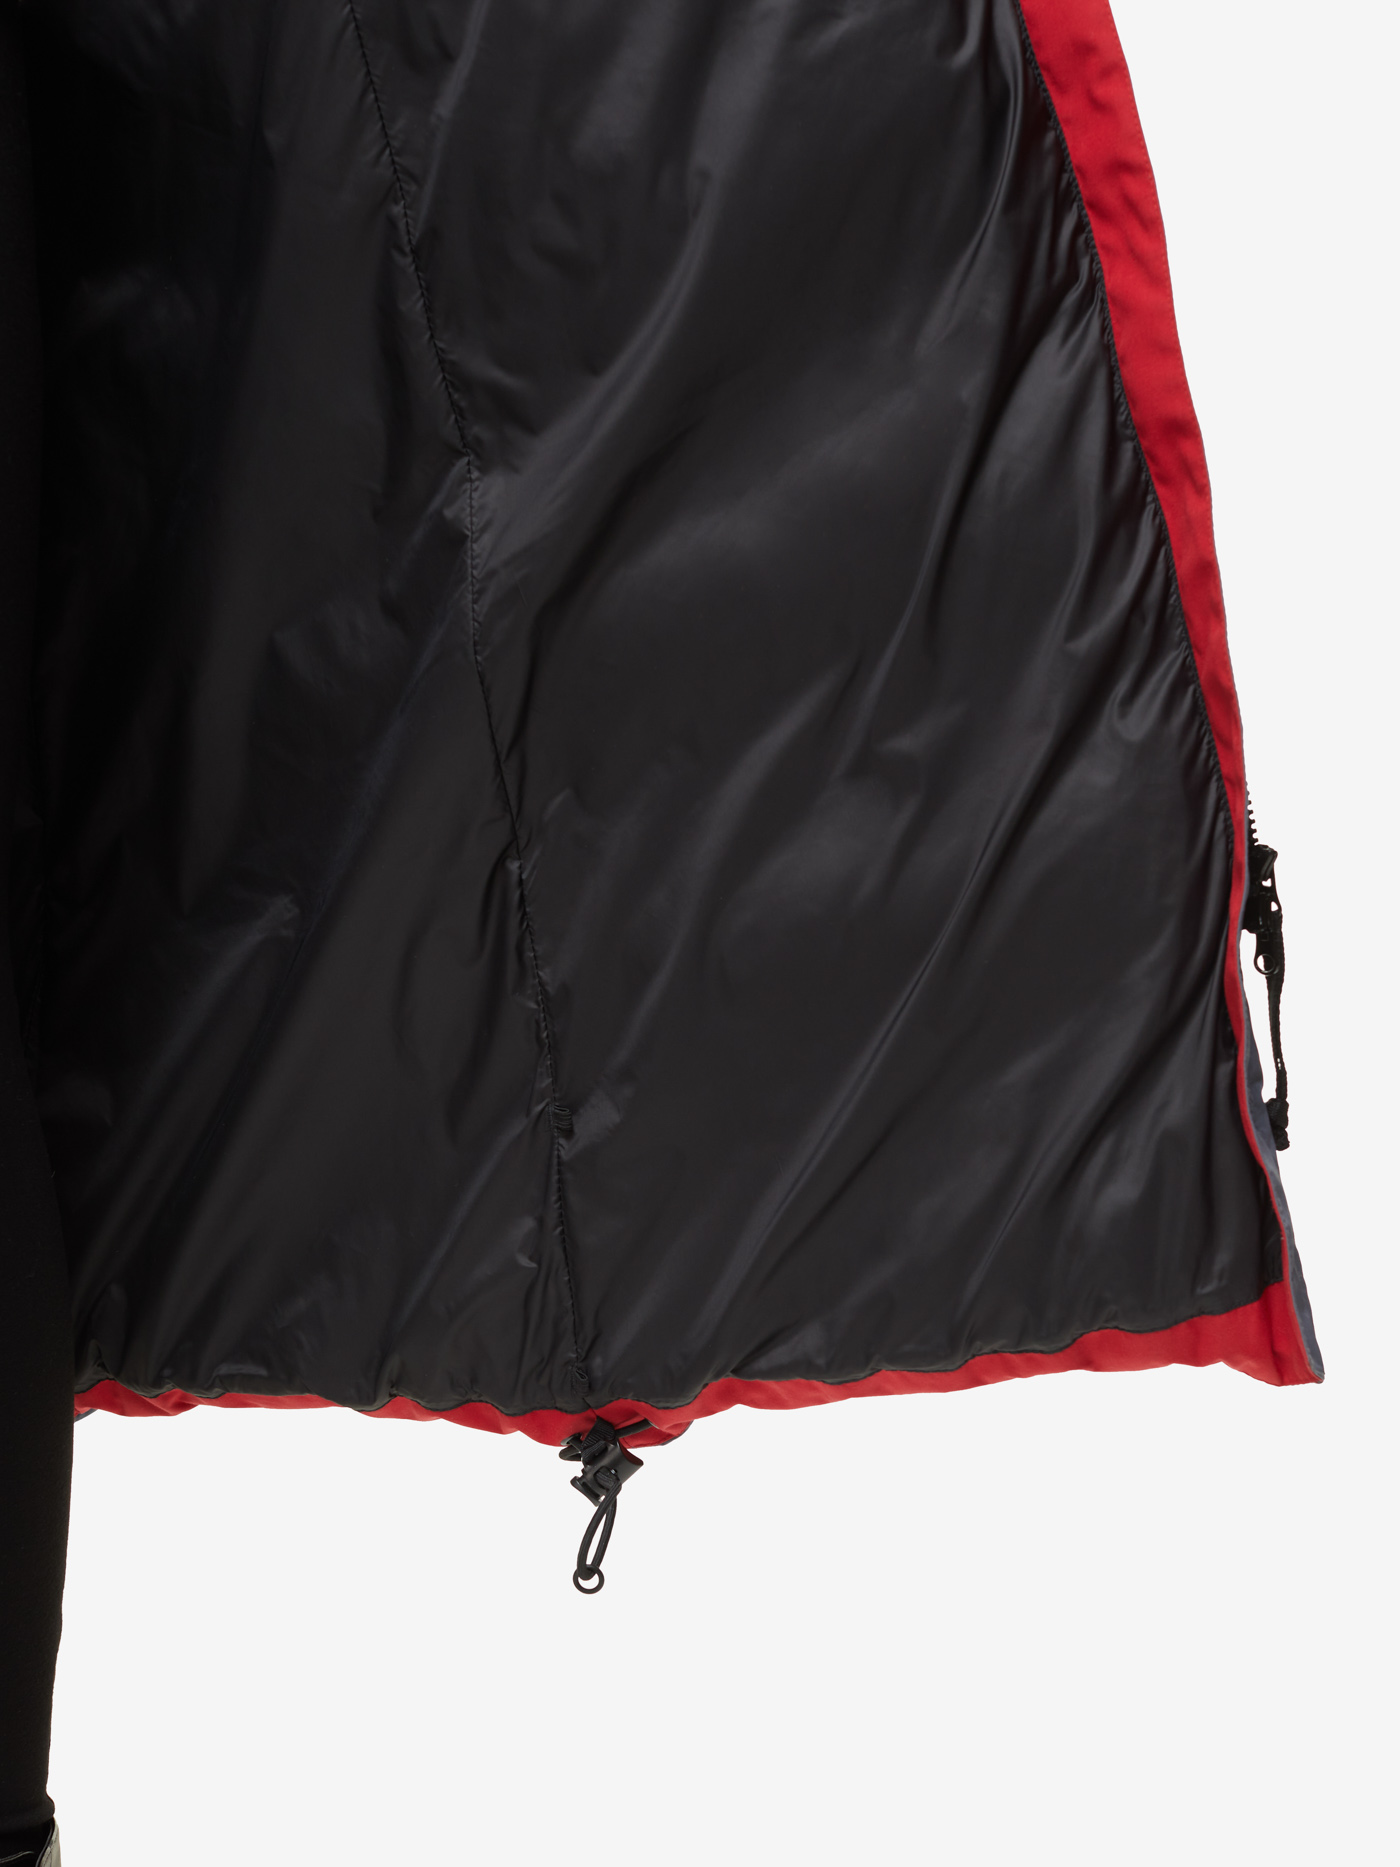 Пуховое пальто BASK, размер 46, цвет маренго 19H51-9675-046 YANA - фото 9